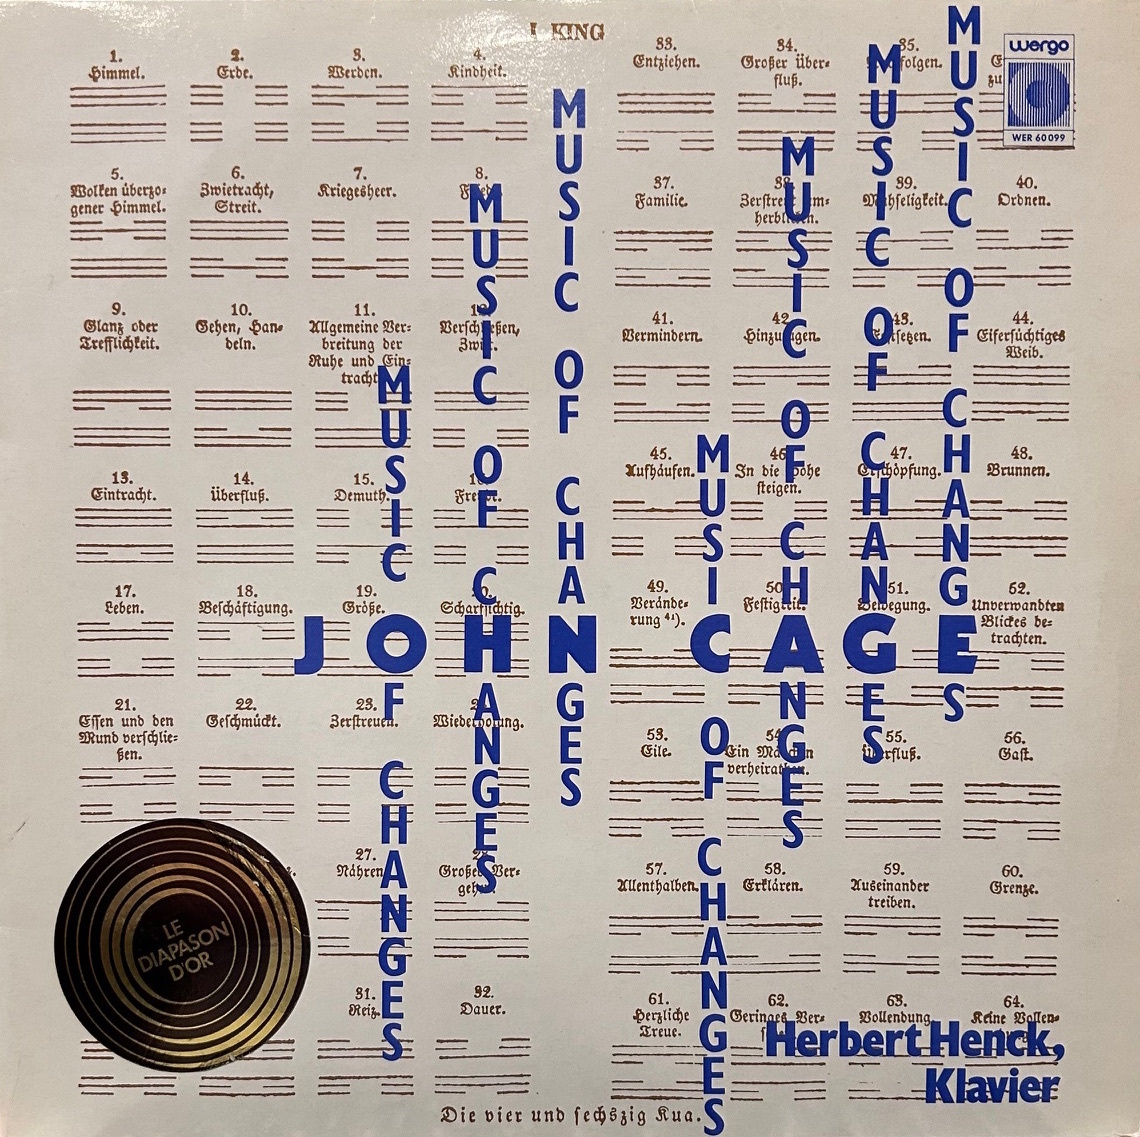 Джон Кейдж / Герберт Хенк -Мусис изменений / работа, которая воплощает музыку = неопределенность музыка!